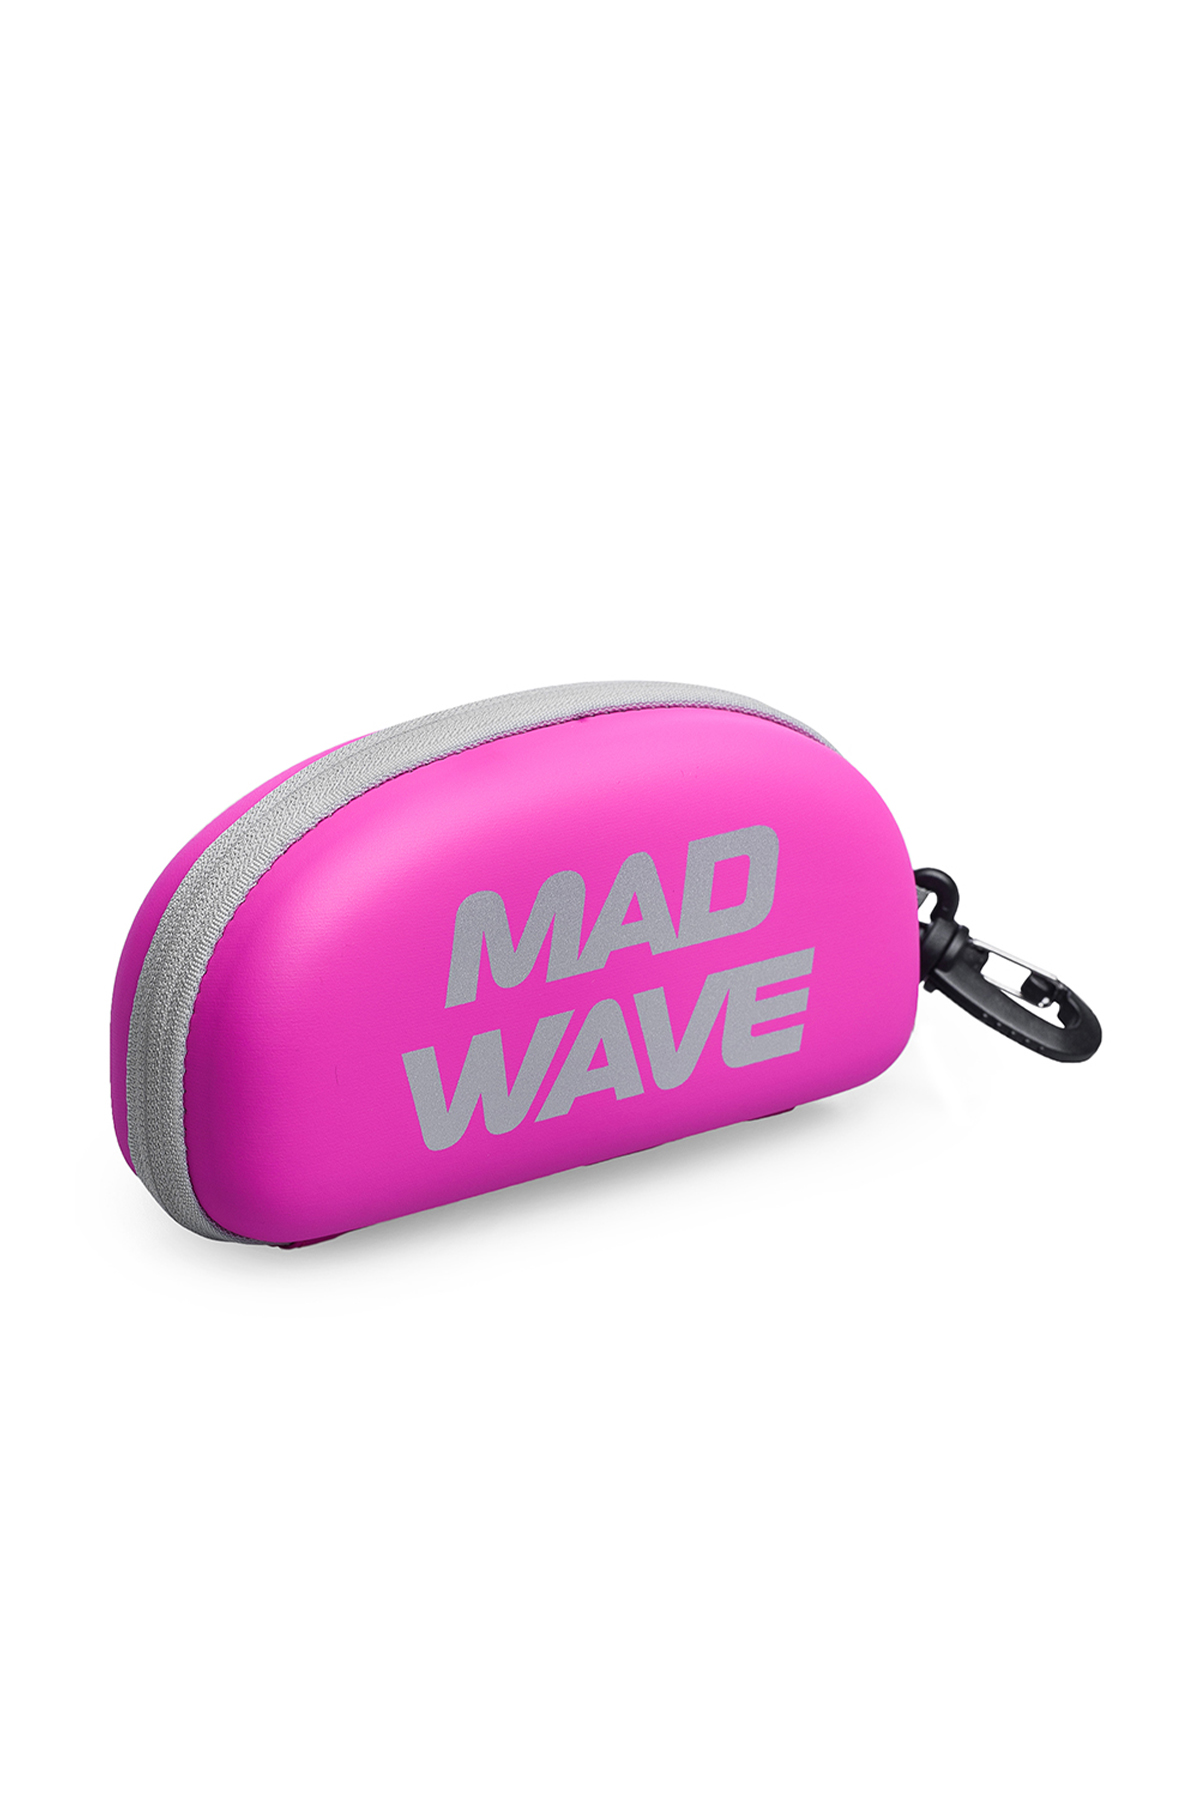 Mad Wave Pembe Gözlük Kılıfı  